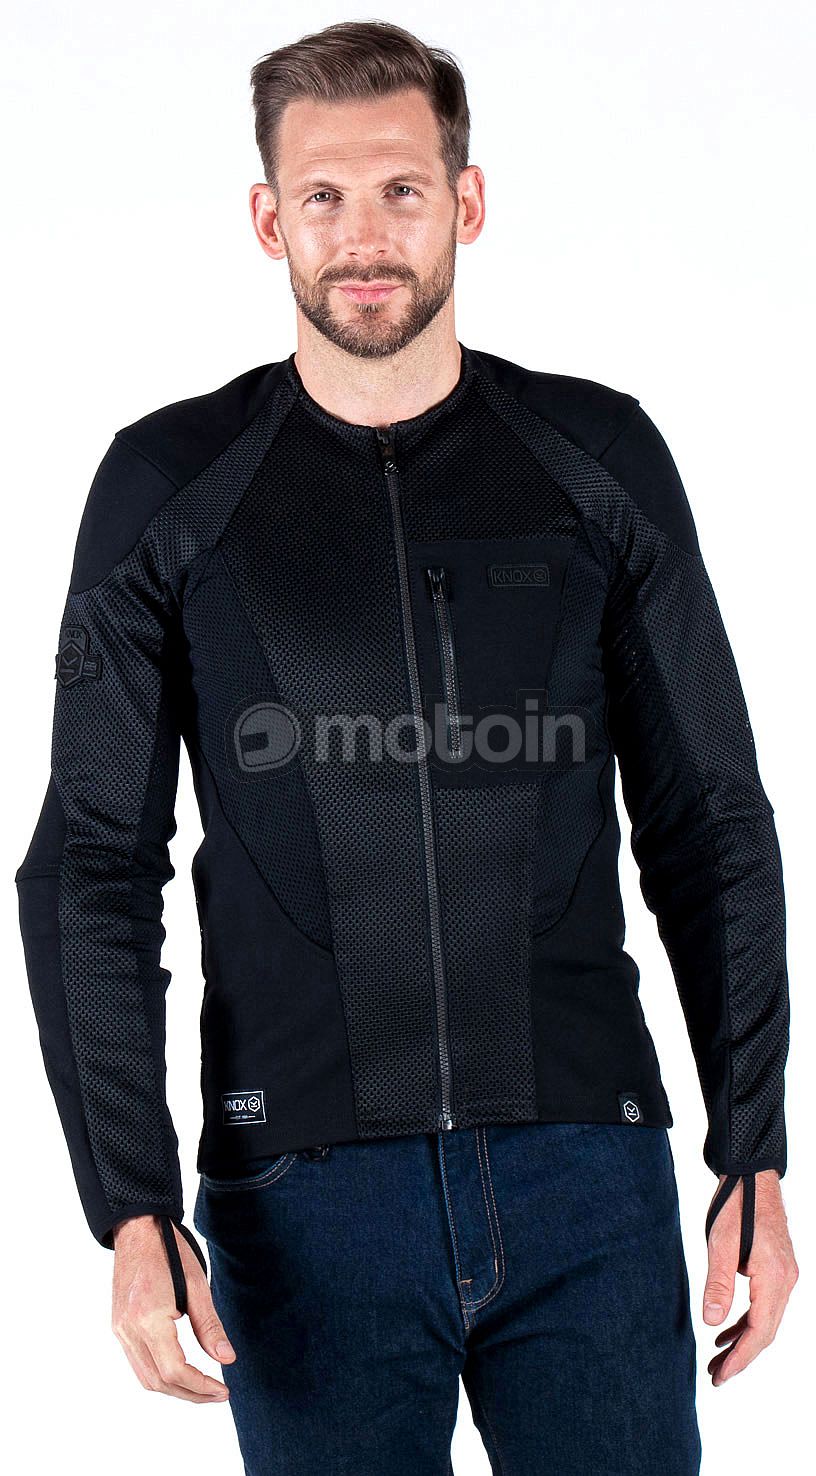 Motorcycle jacket Knox Urbane Pro MK2 Black at the best price